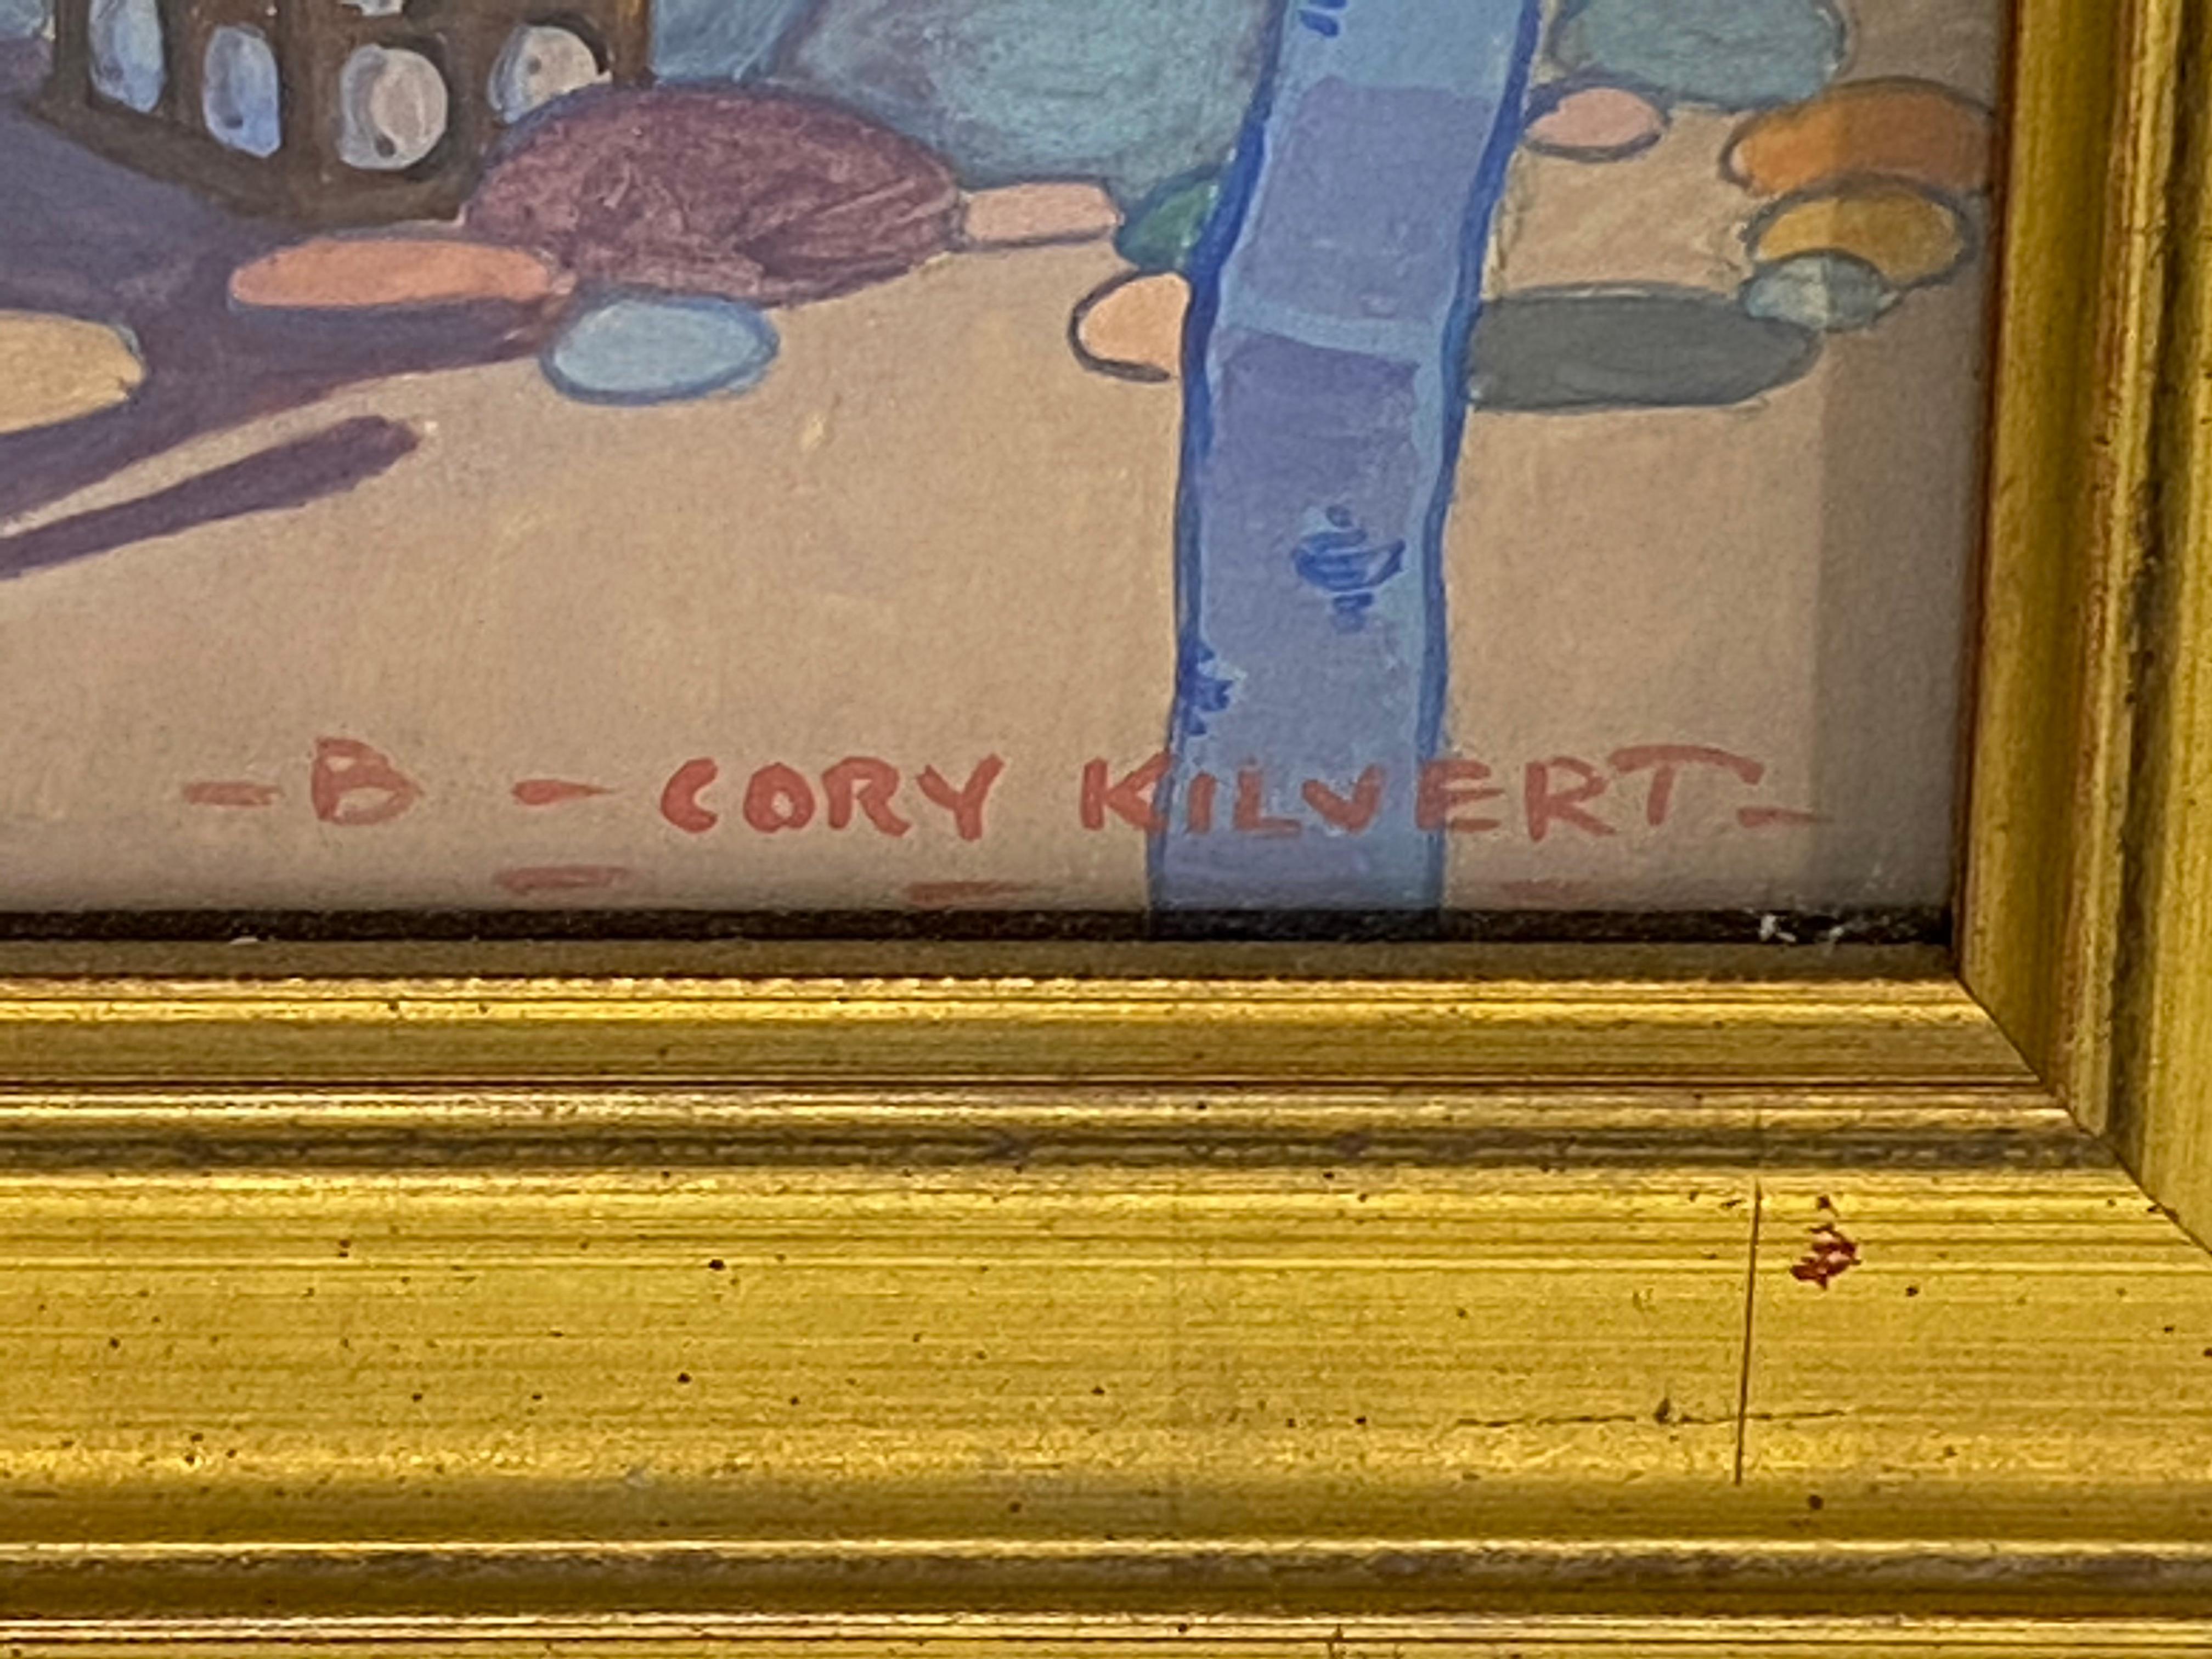 B. Cory Kilvert 